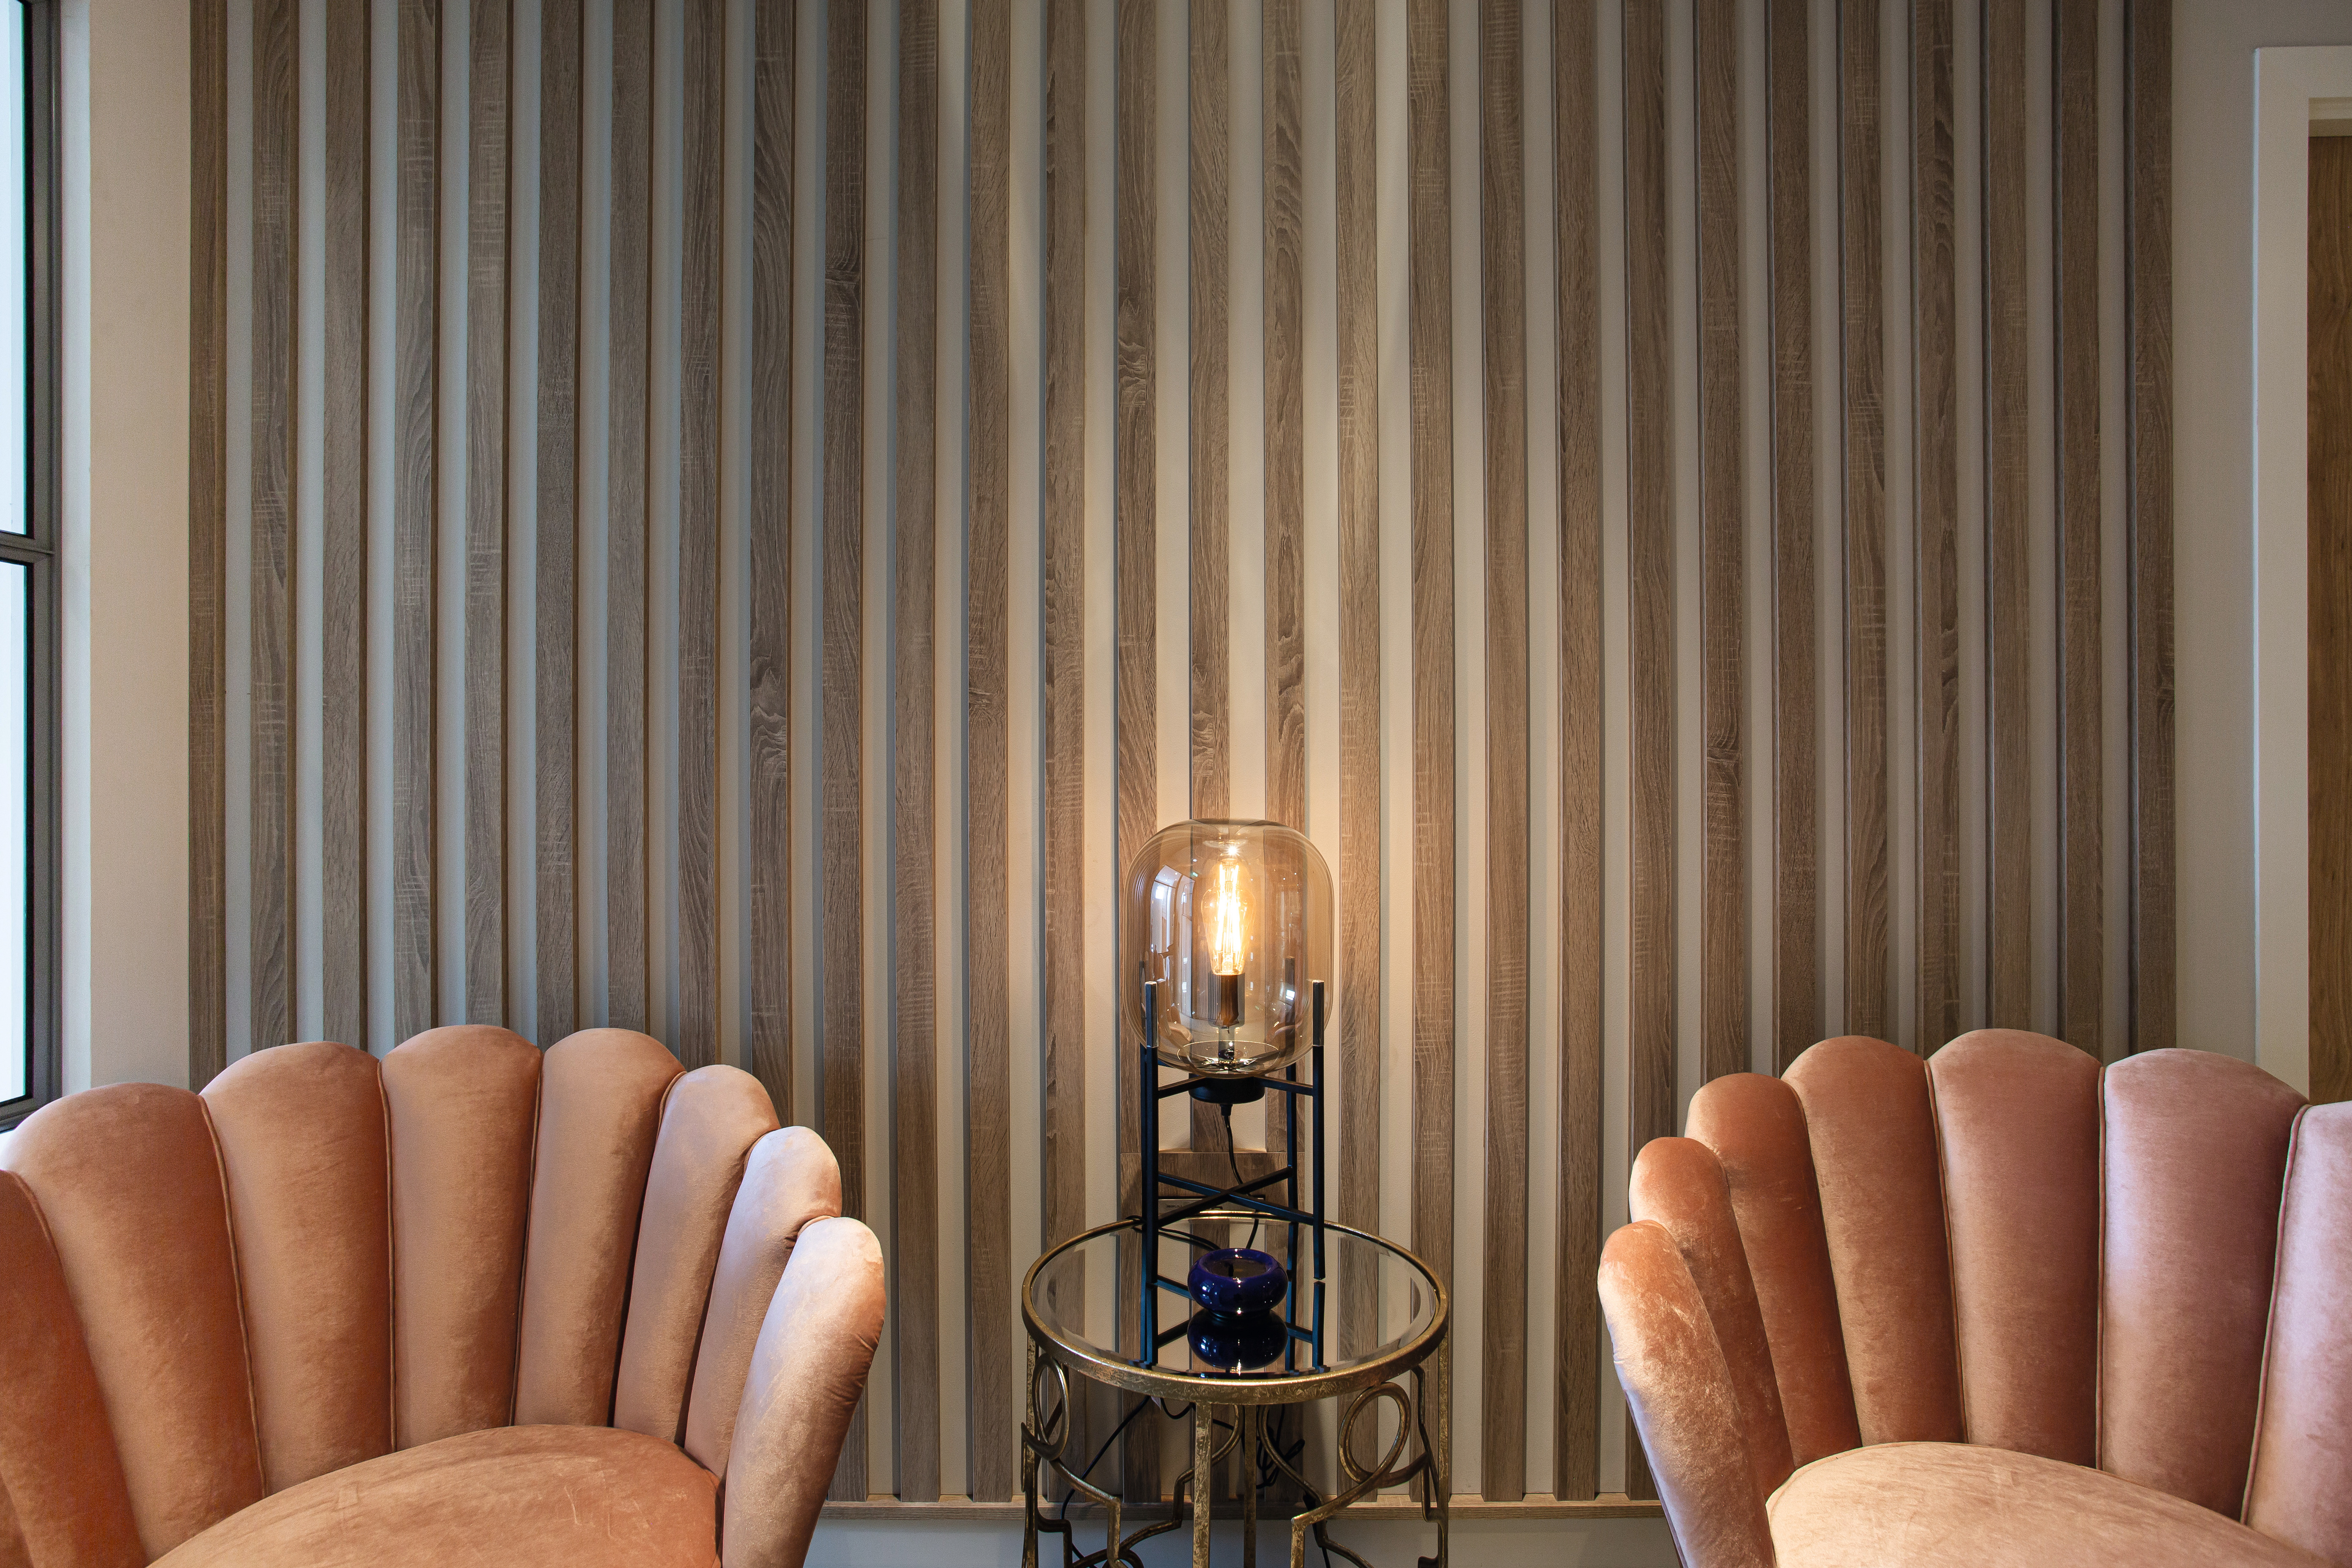 Die Holzlamellen an den Wänden im Dekor Bardolino Eiche grau sorgen für eine besonders entspannte Atmosphäre.